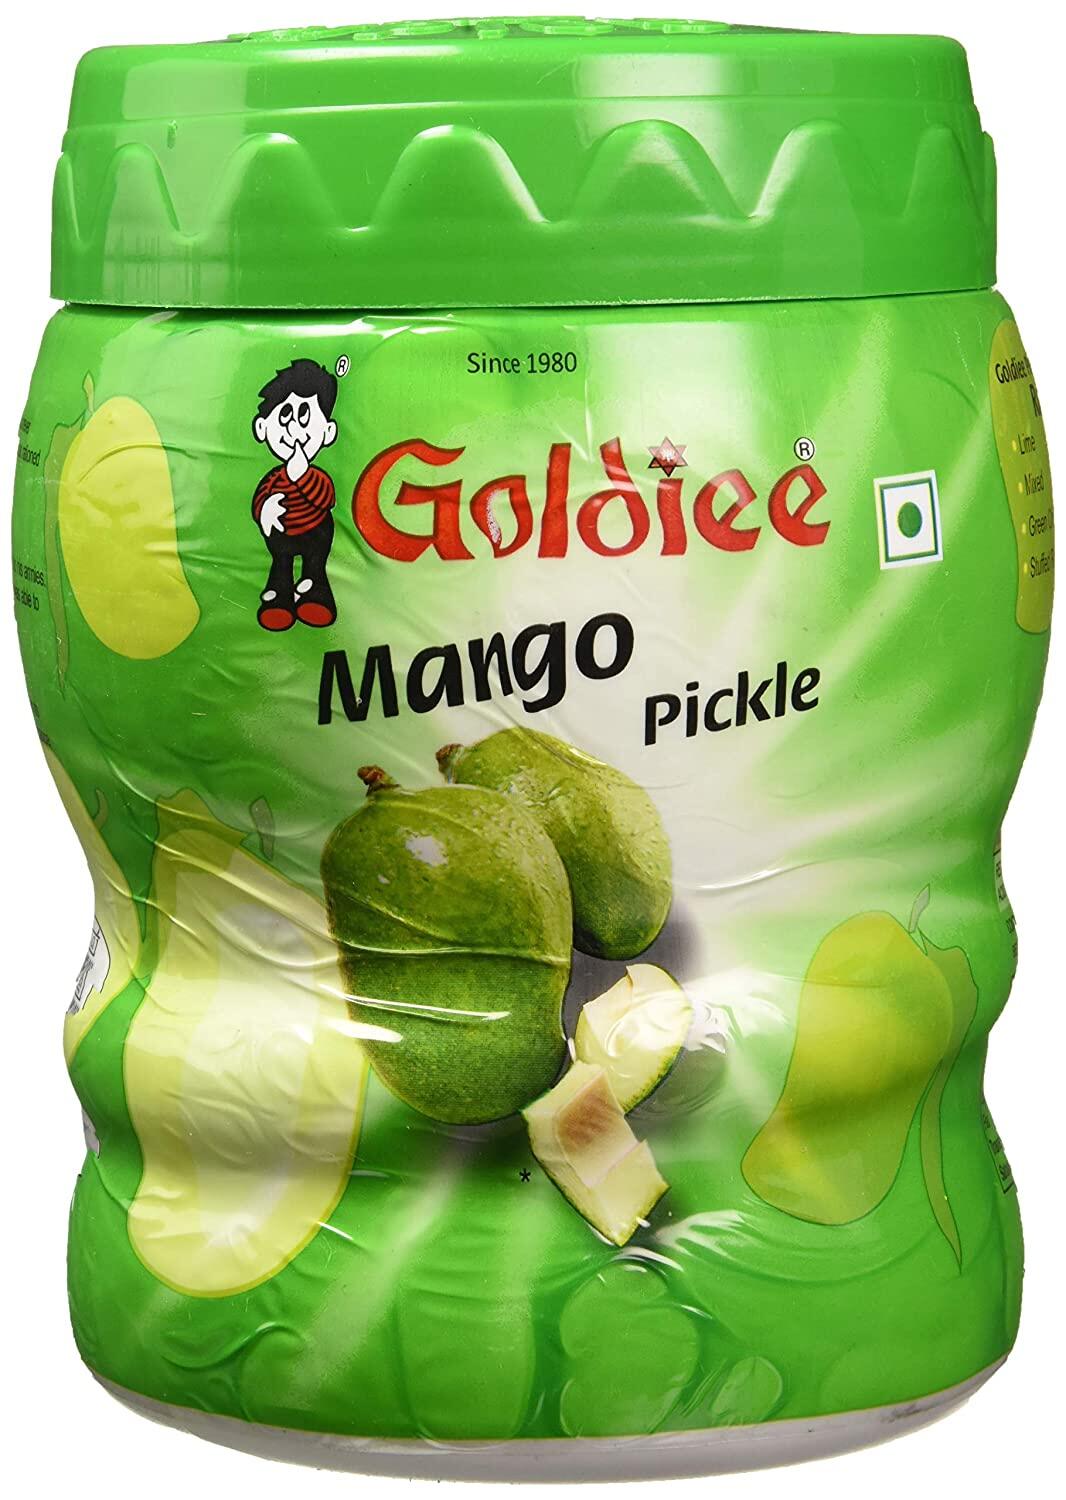 Mango pickle (Goldiee) 500gm??